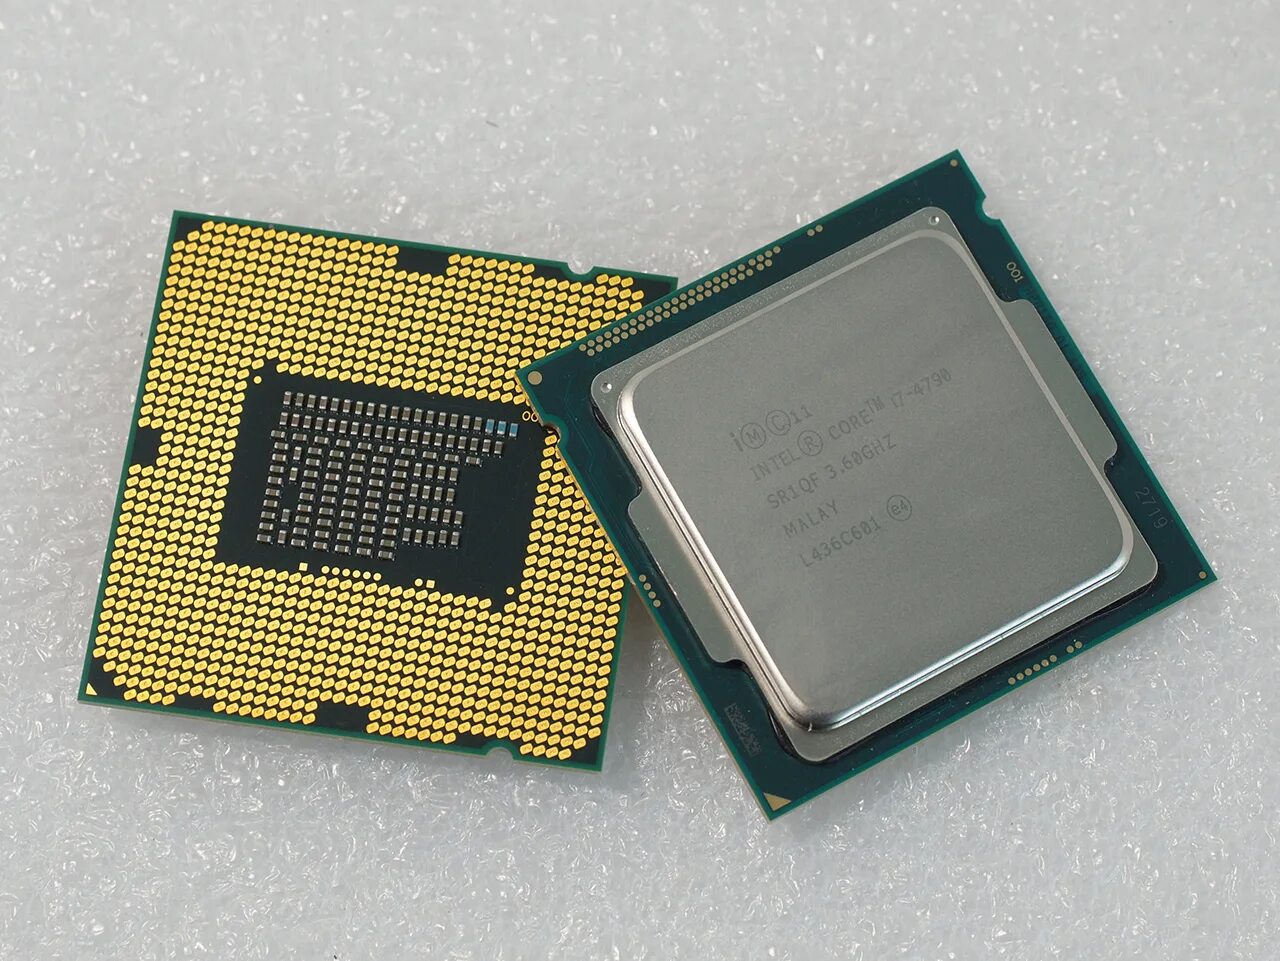 Intel 4790